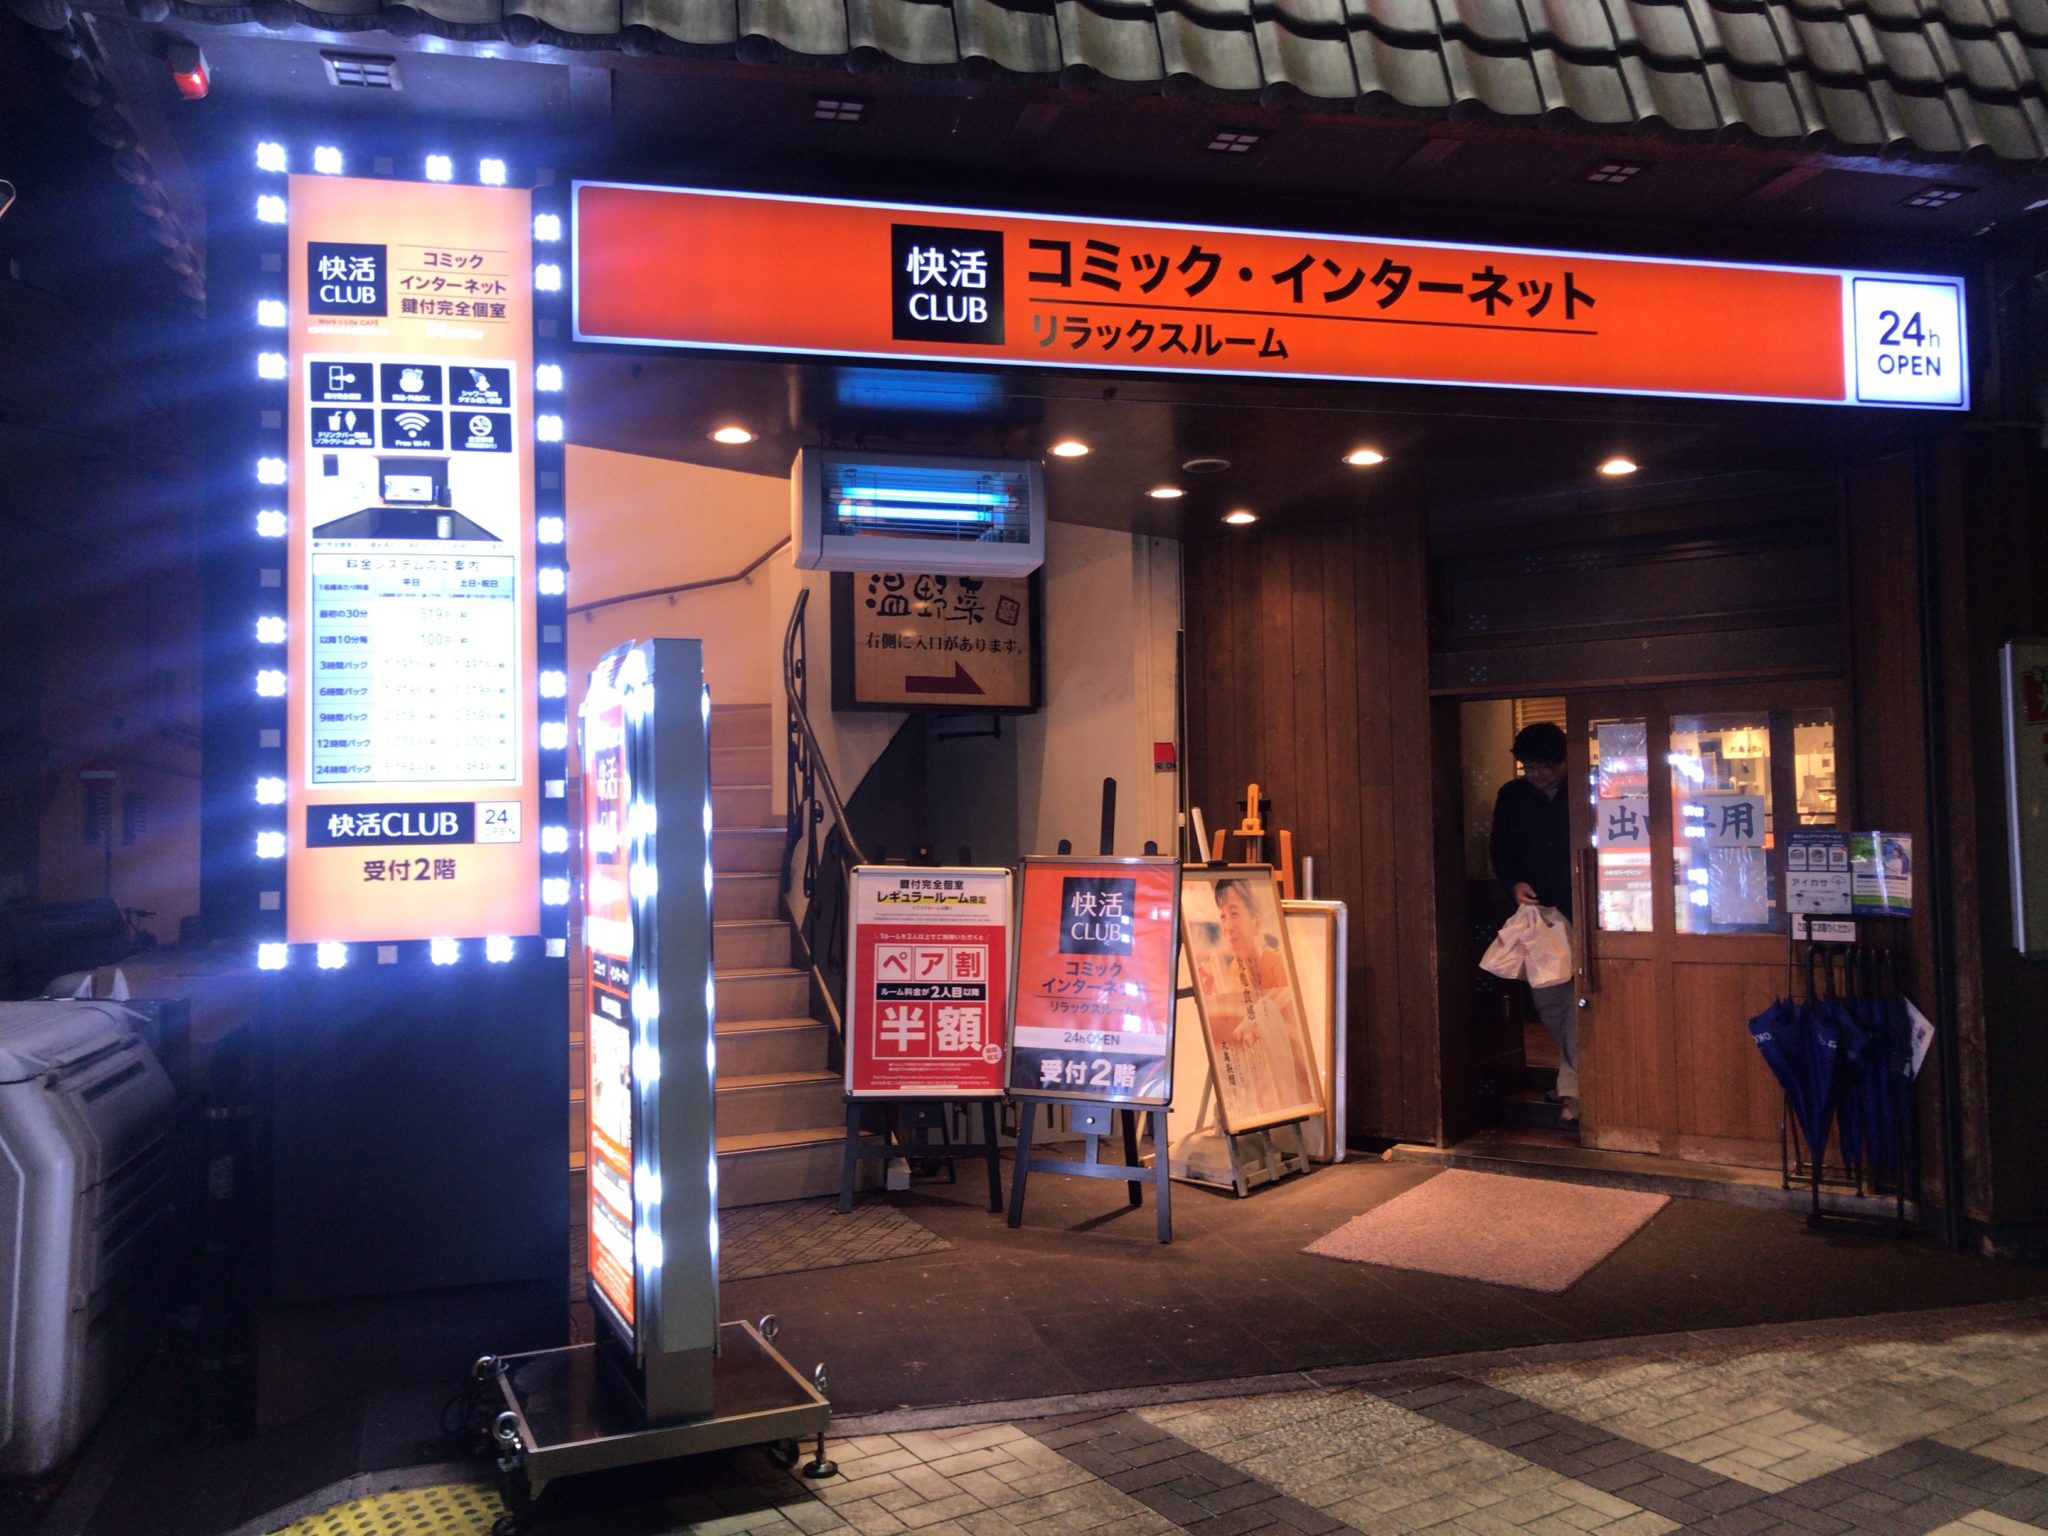 関内駅から徒歩2分 快活club関内店をレポート 日本全国のネカフェ 漫画喫茶マップのヒマップ